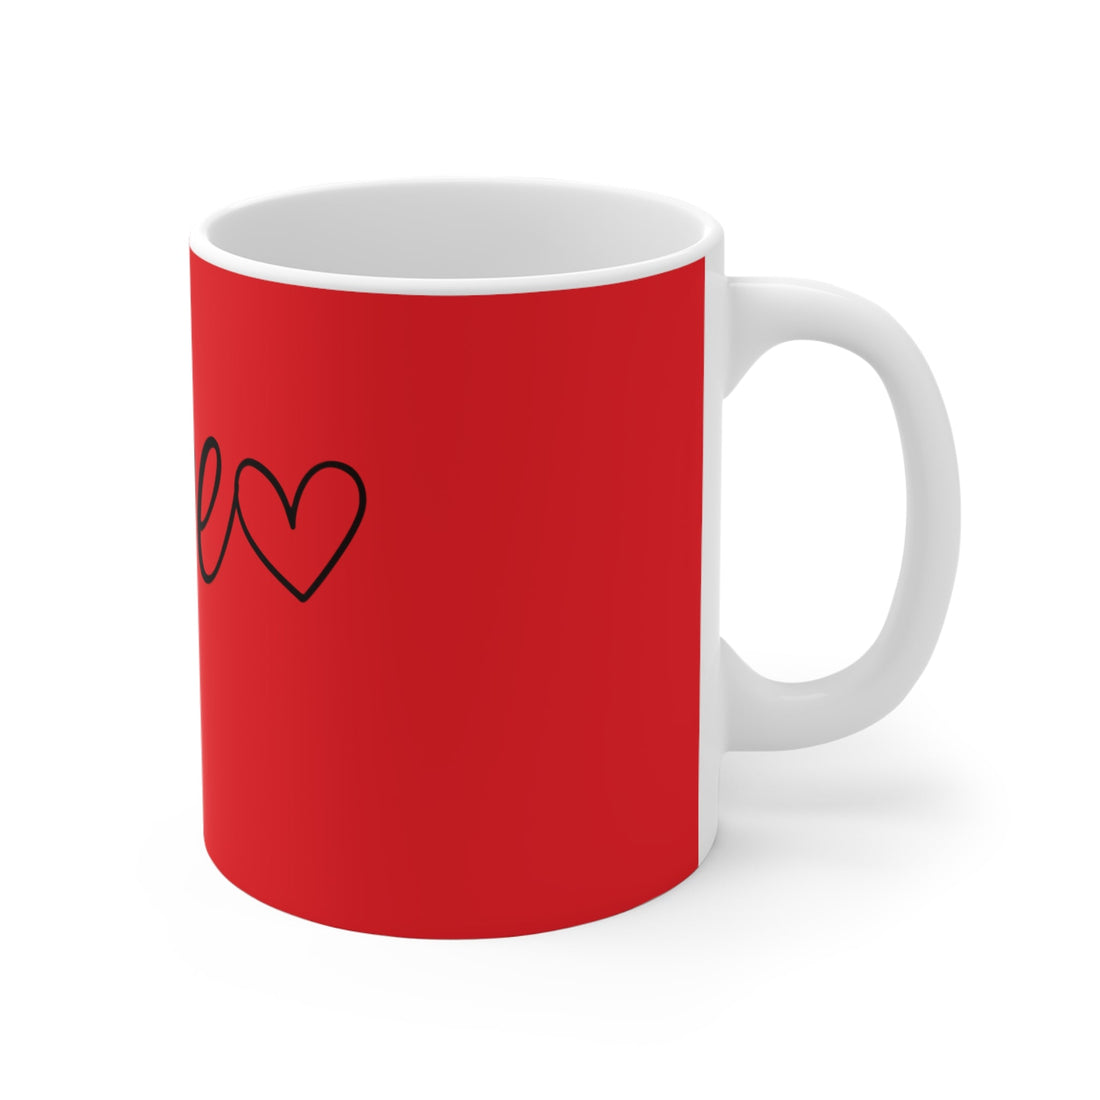 Love Love Love Mug 11oz - Mug - Positively Sassy - Love Love Love Mug 11oz